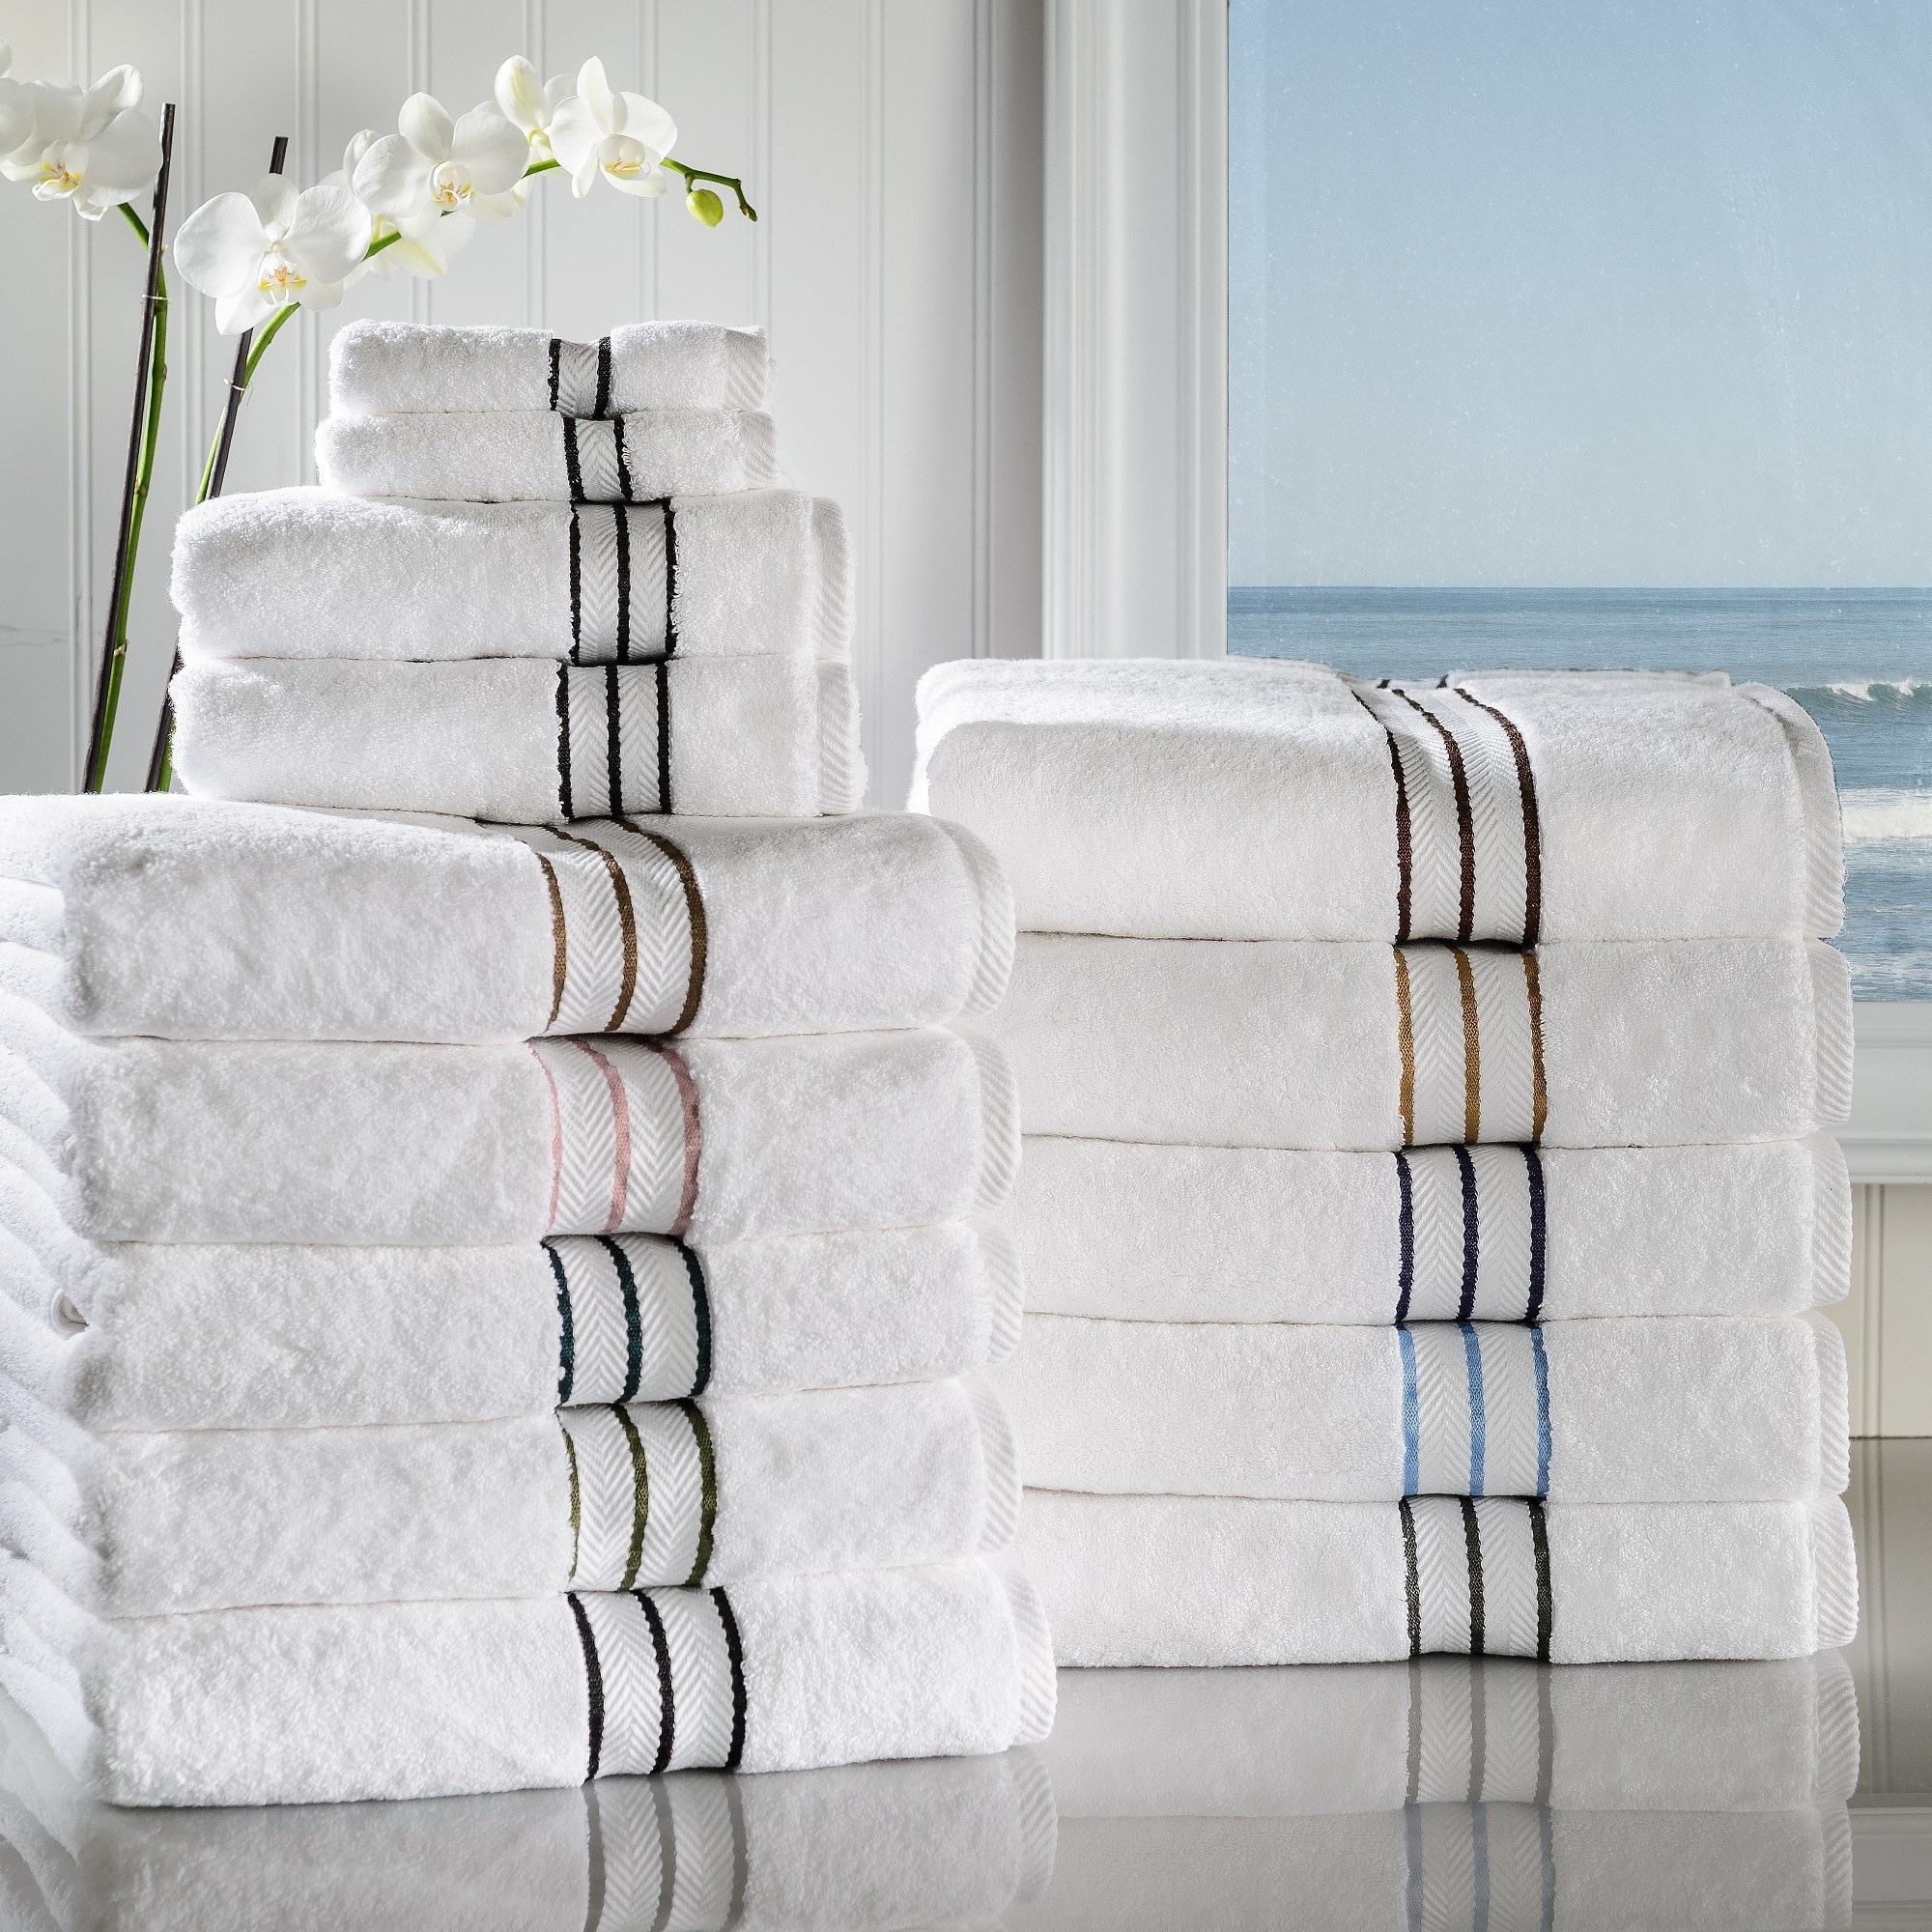 700 - 899 Towels - Bed Bath & Beyond